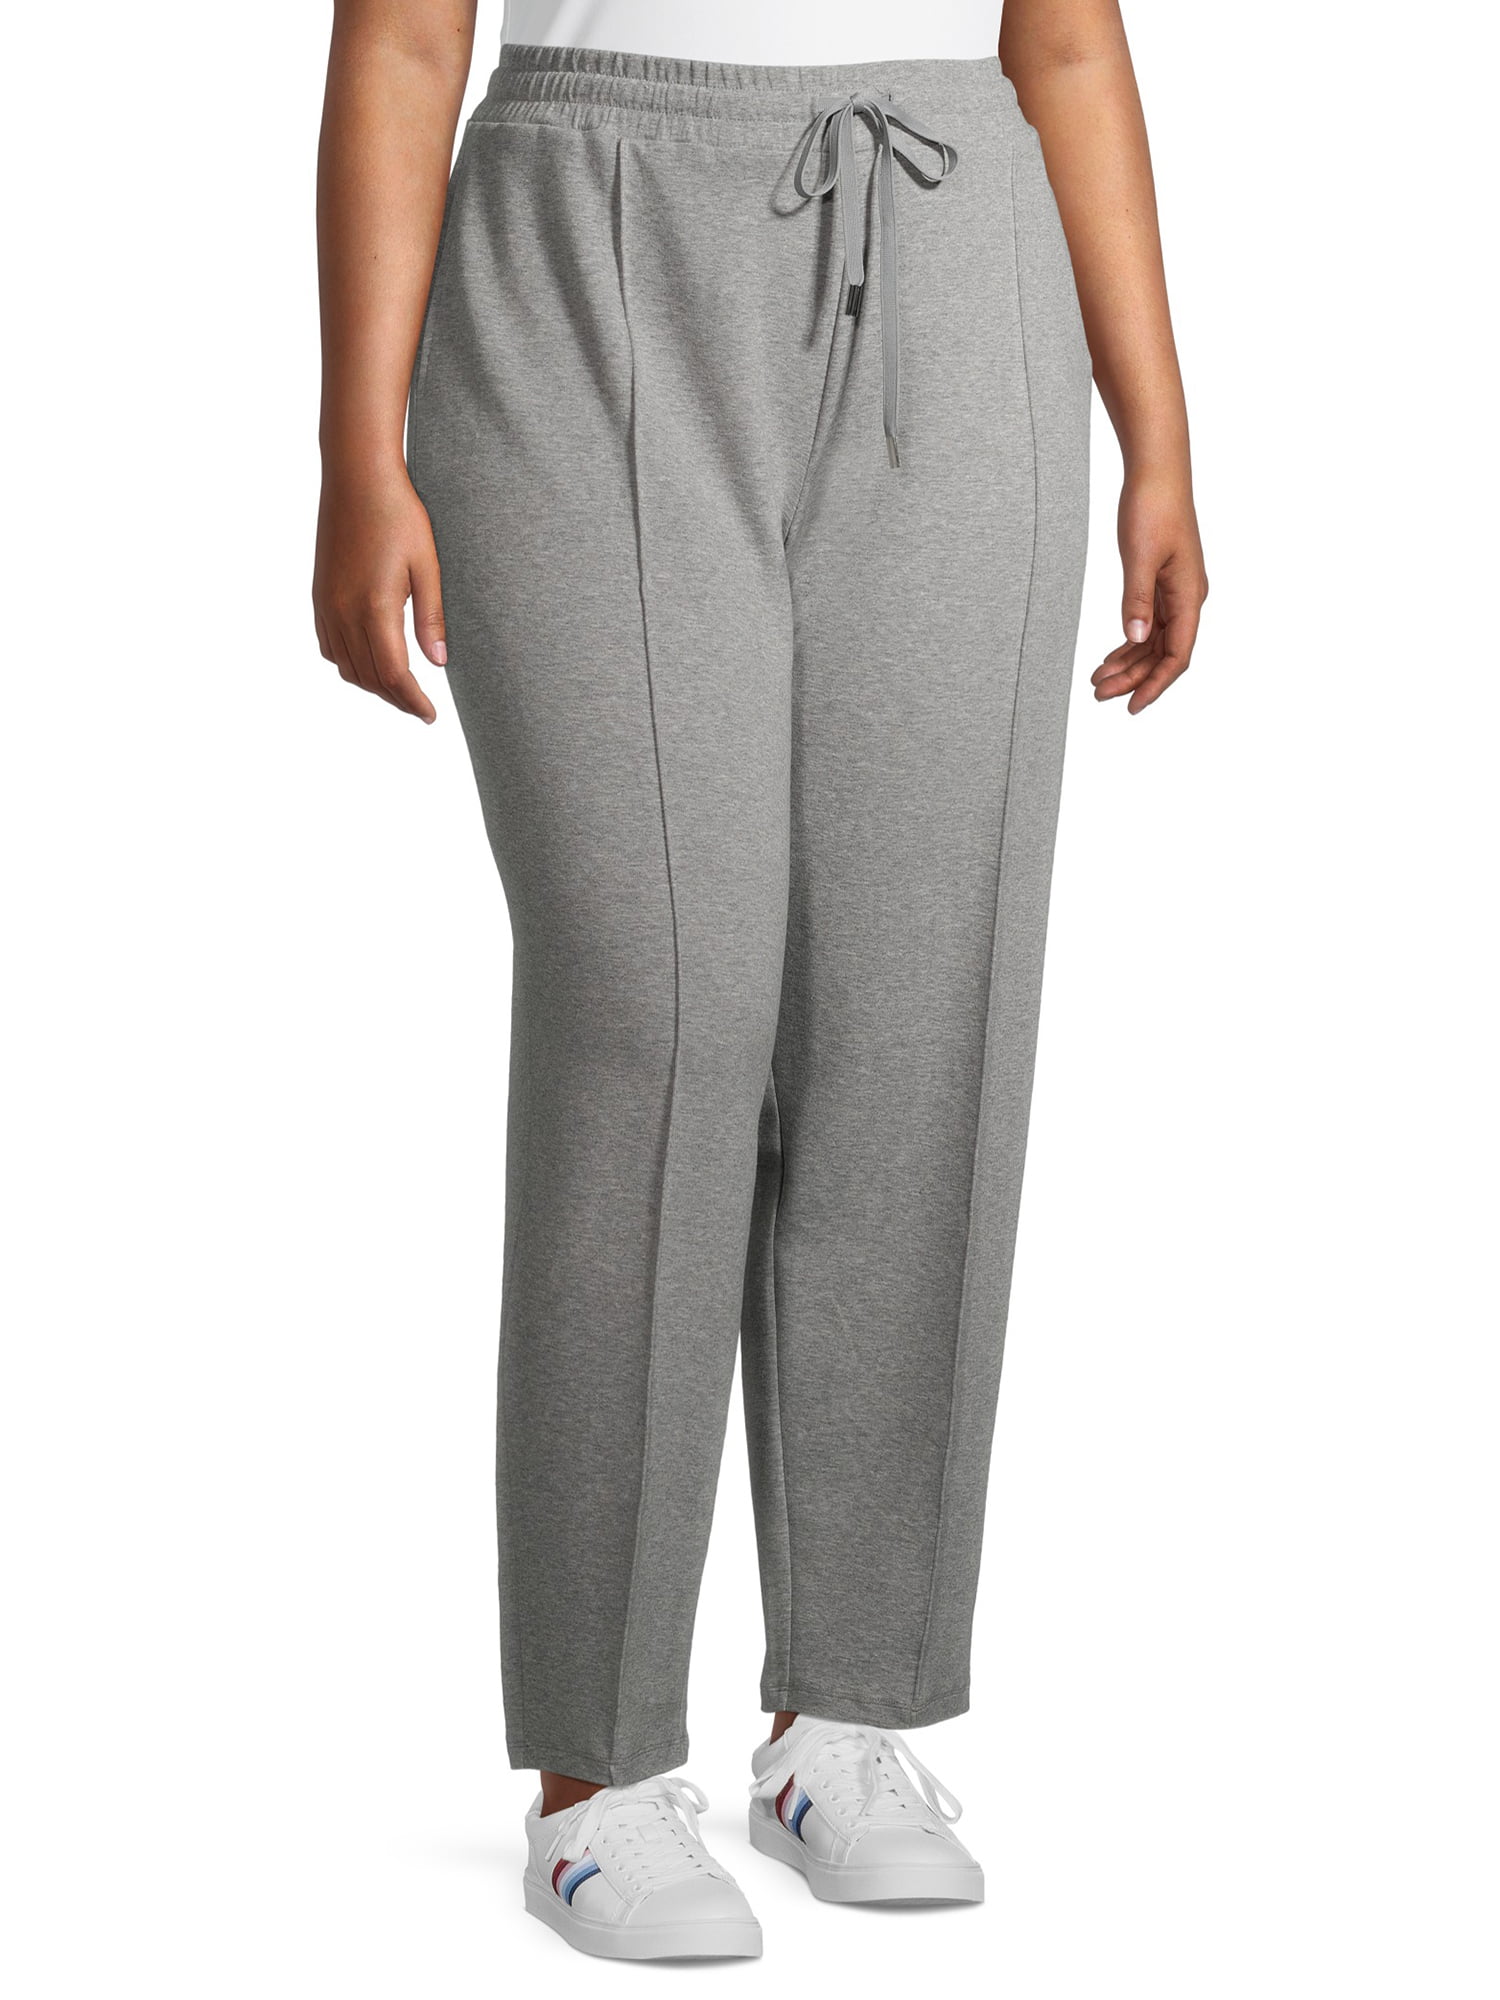 Terra & Sky Women's Plus Size Pintuck Knit Pants 